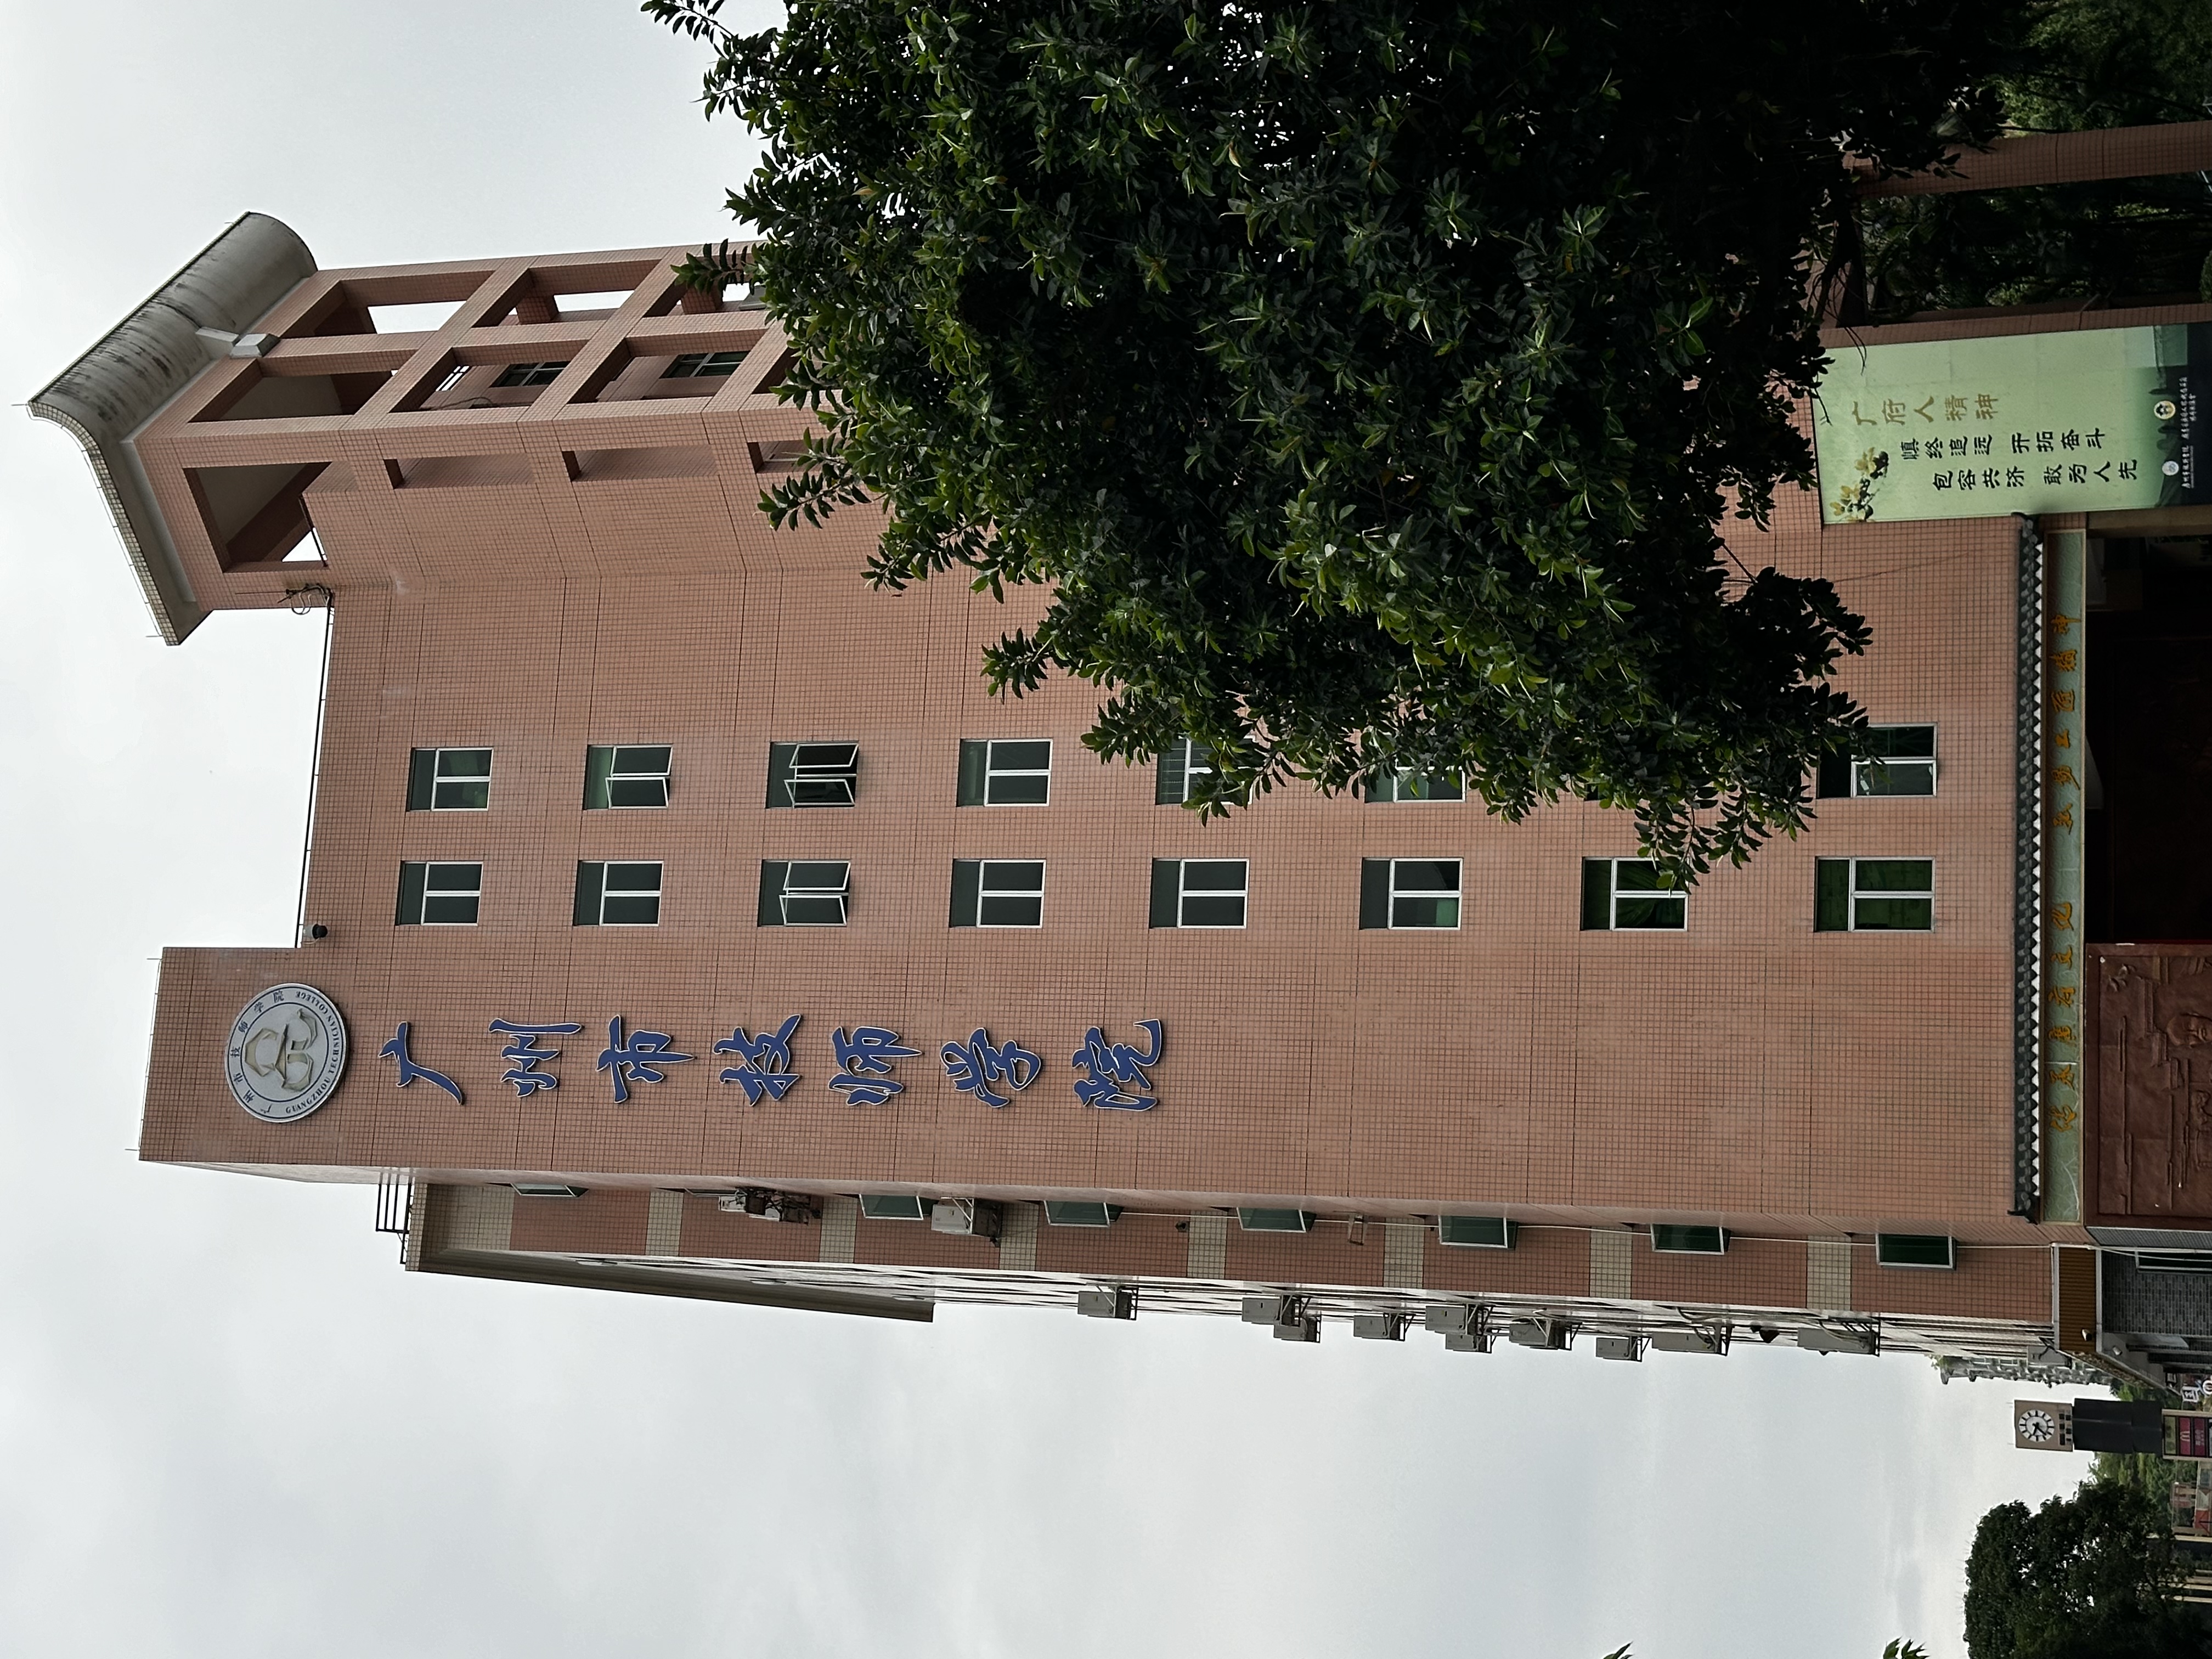 香港職工教育及職業培訓協會與廣州技師學院開展教育交流合作